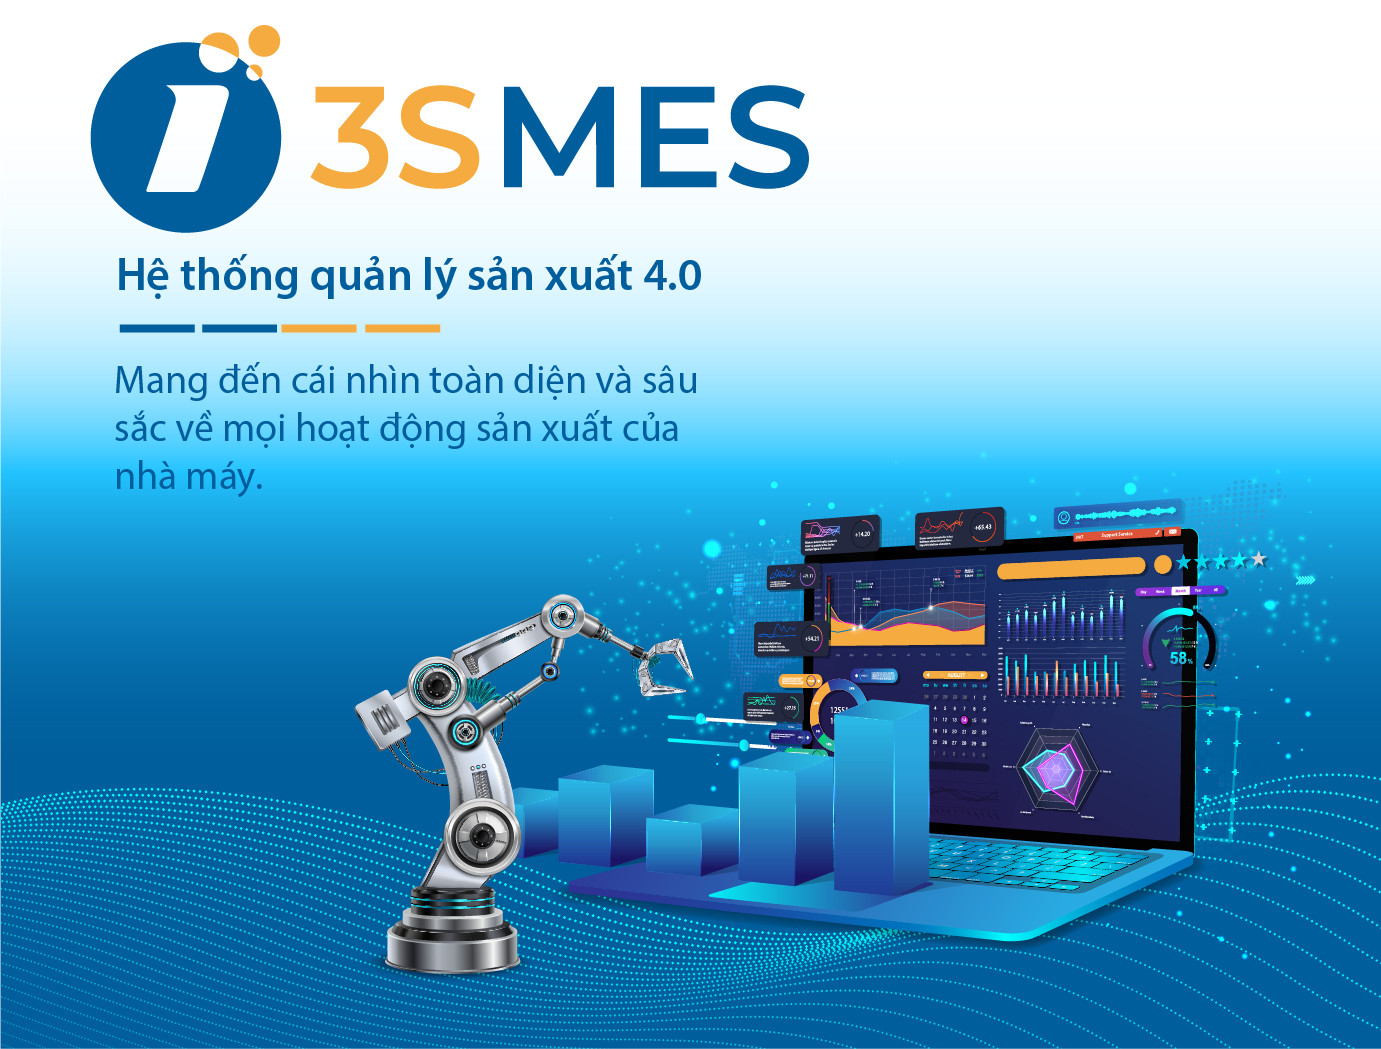 3S MES mang đến cái nhìn toàn diện về mọi hoạt động sản xuất của nhà máy